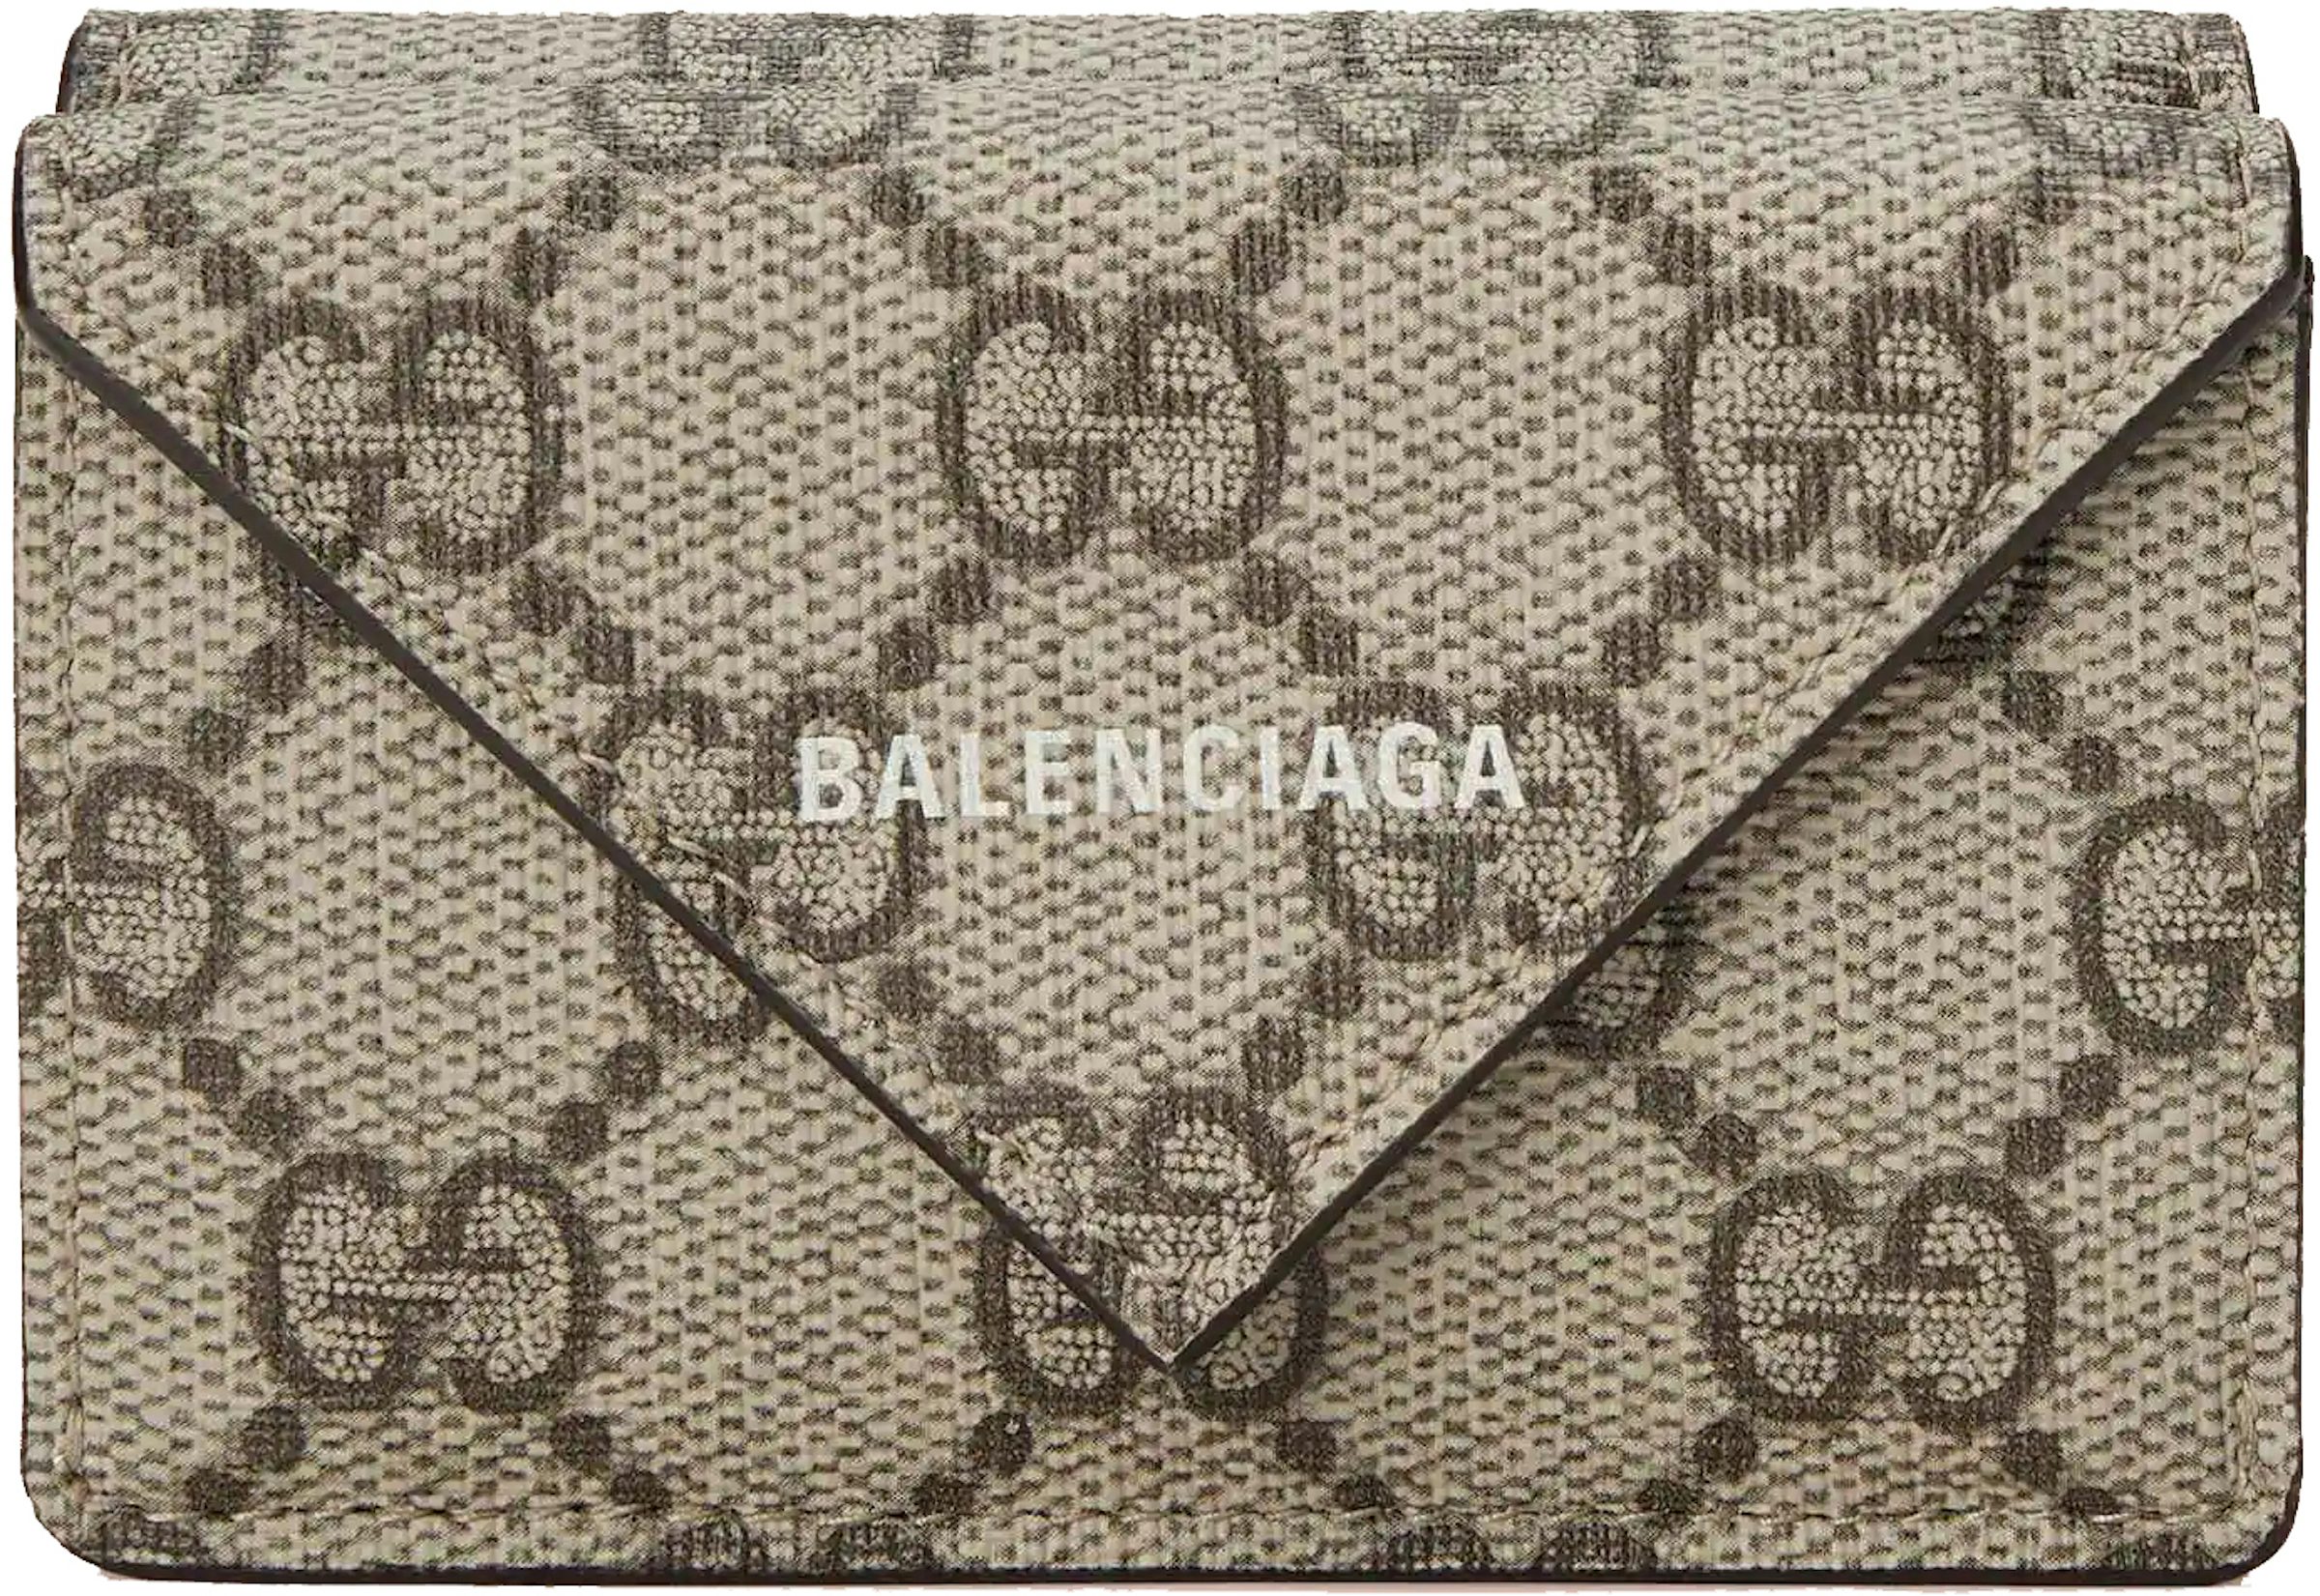 Gucci x Balenciaga “Hackers Project” Paper Bag — CONSUMED